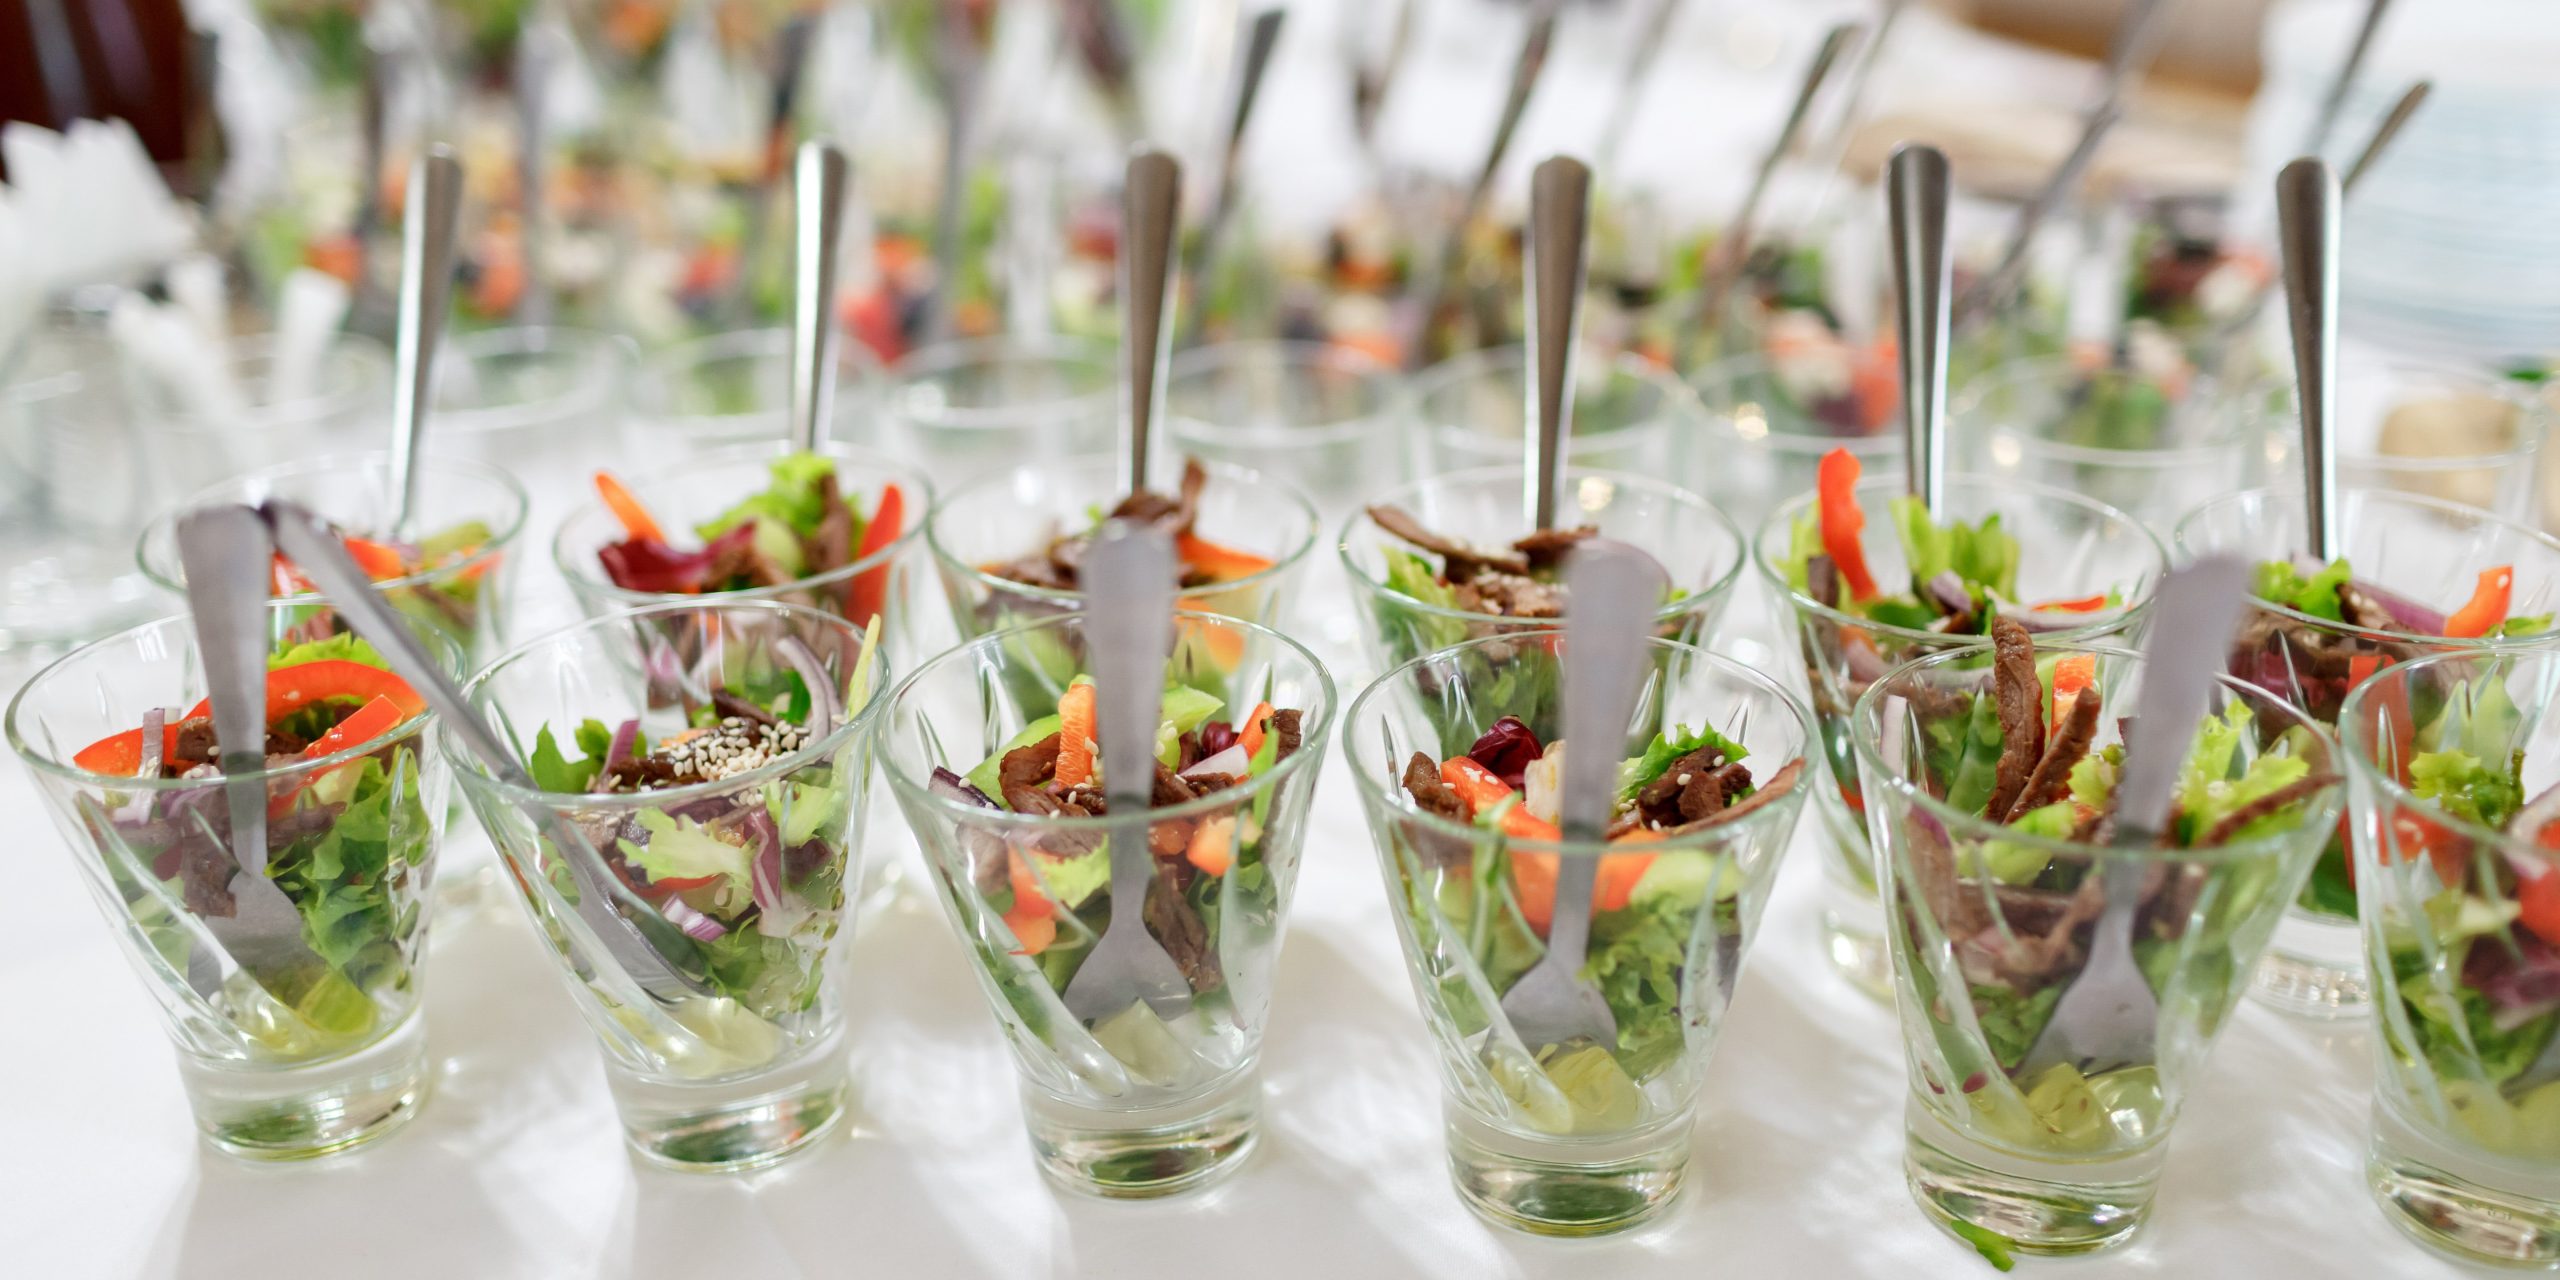 ensaladas en cuencos individuales para eventos con salsas especiales, consejos de presentacion y servicio